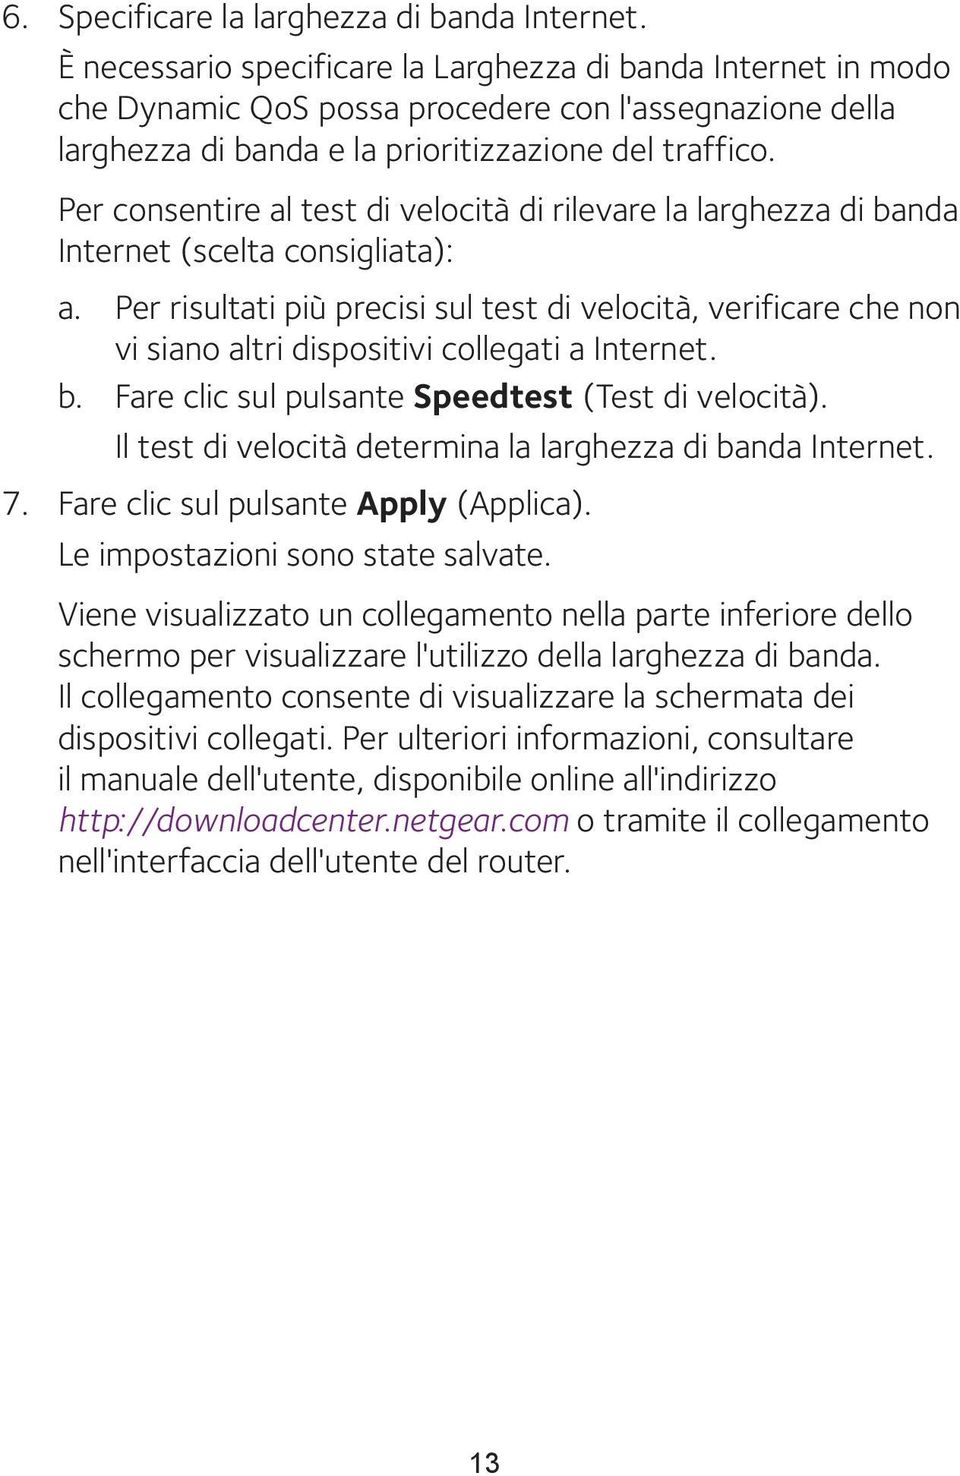 Per consentire al test di velocità di rilevare la larghezza di banda Internet (scelta consigliata): a.